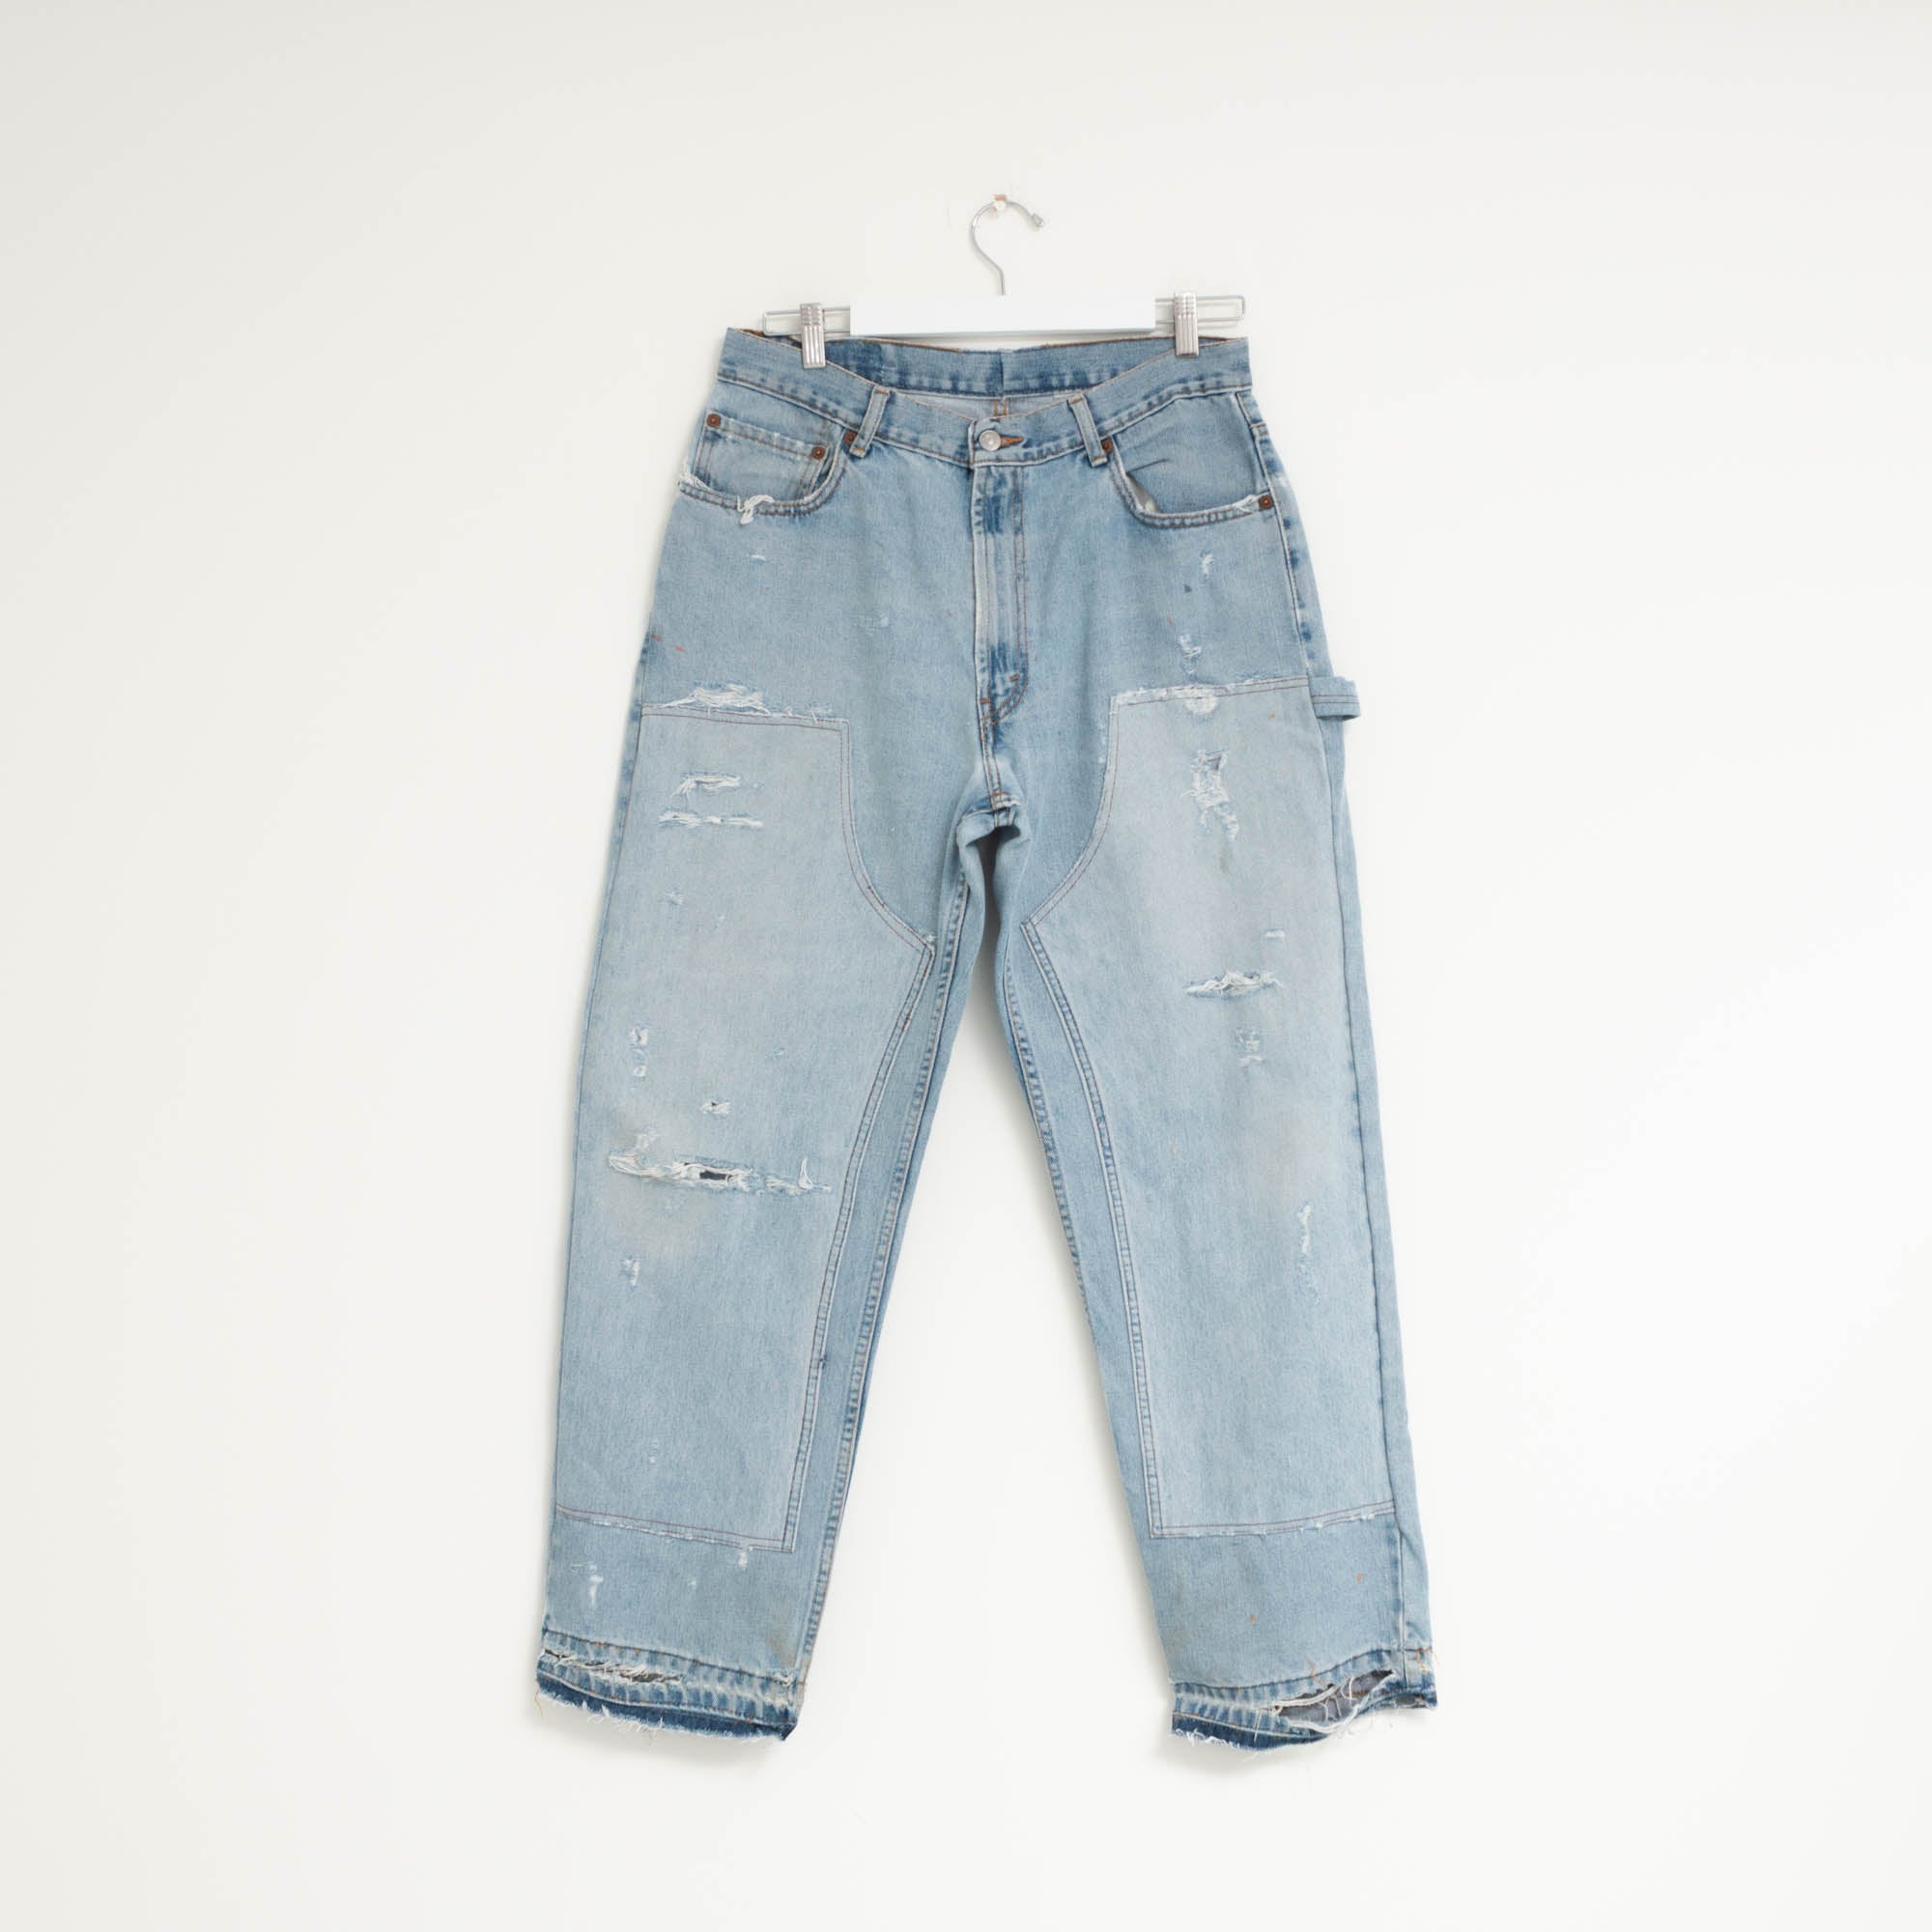 "CARPENTER" Jeans W32 L30